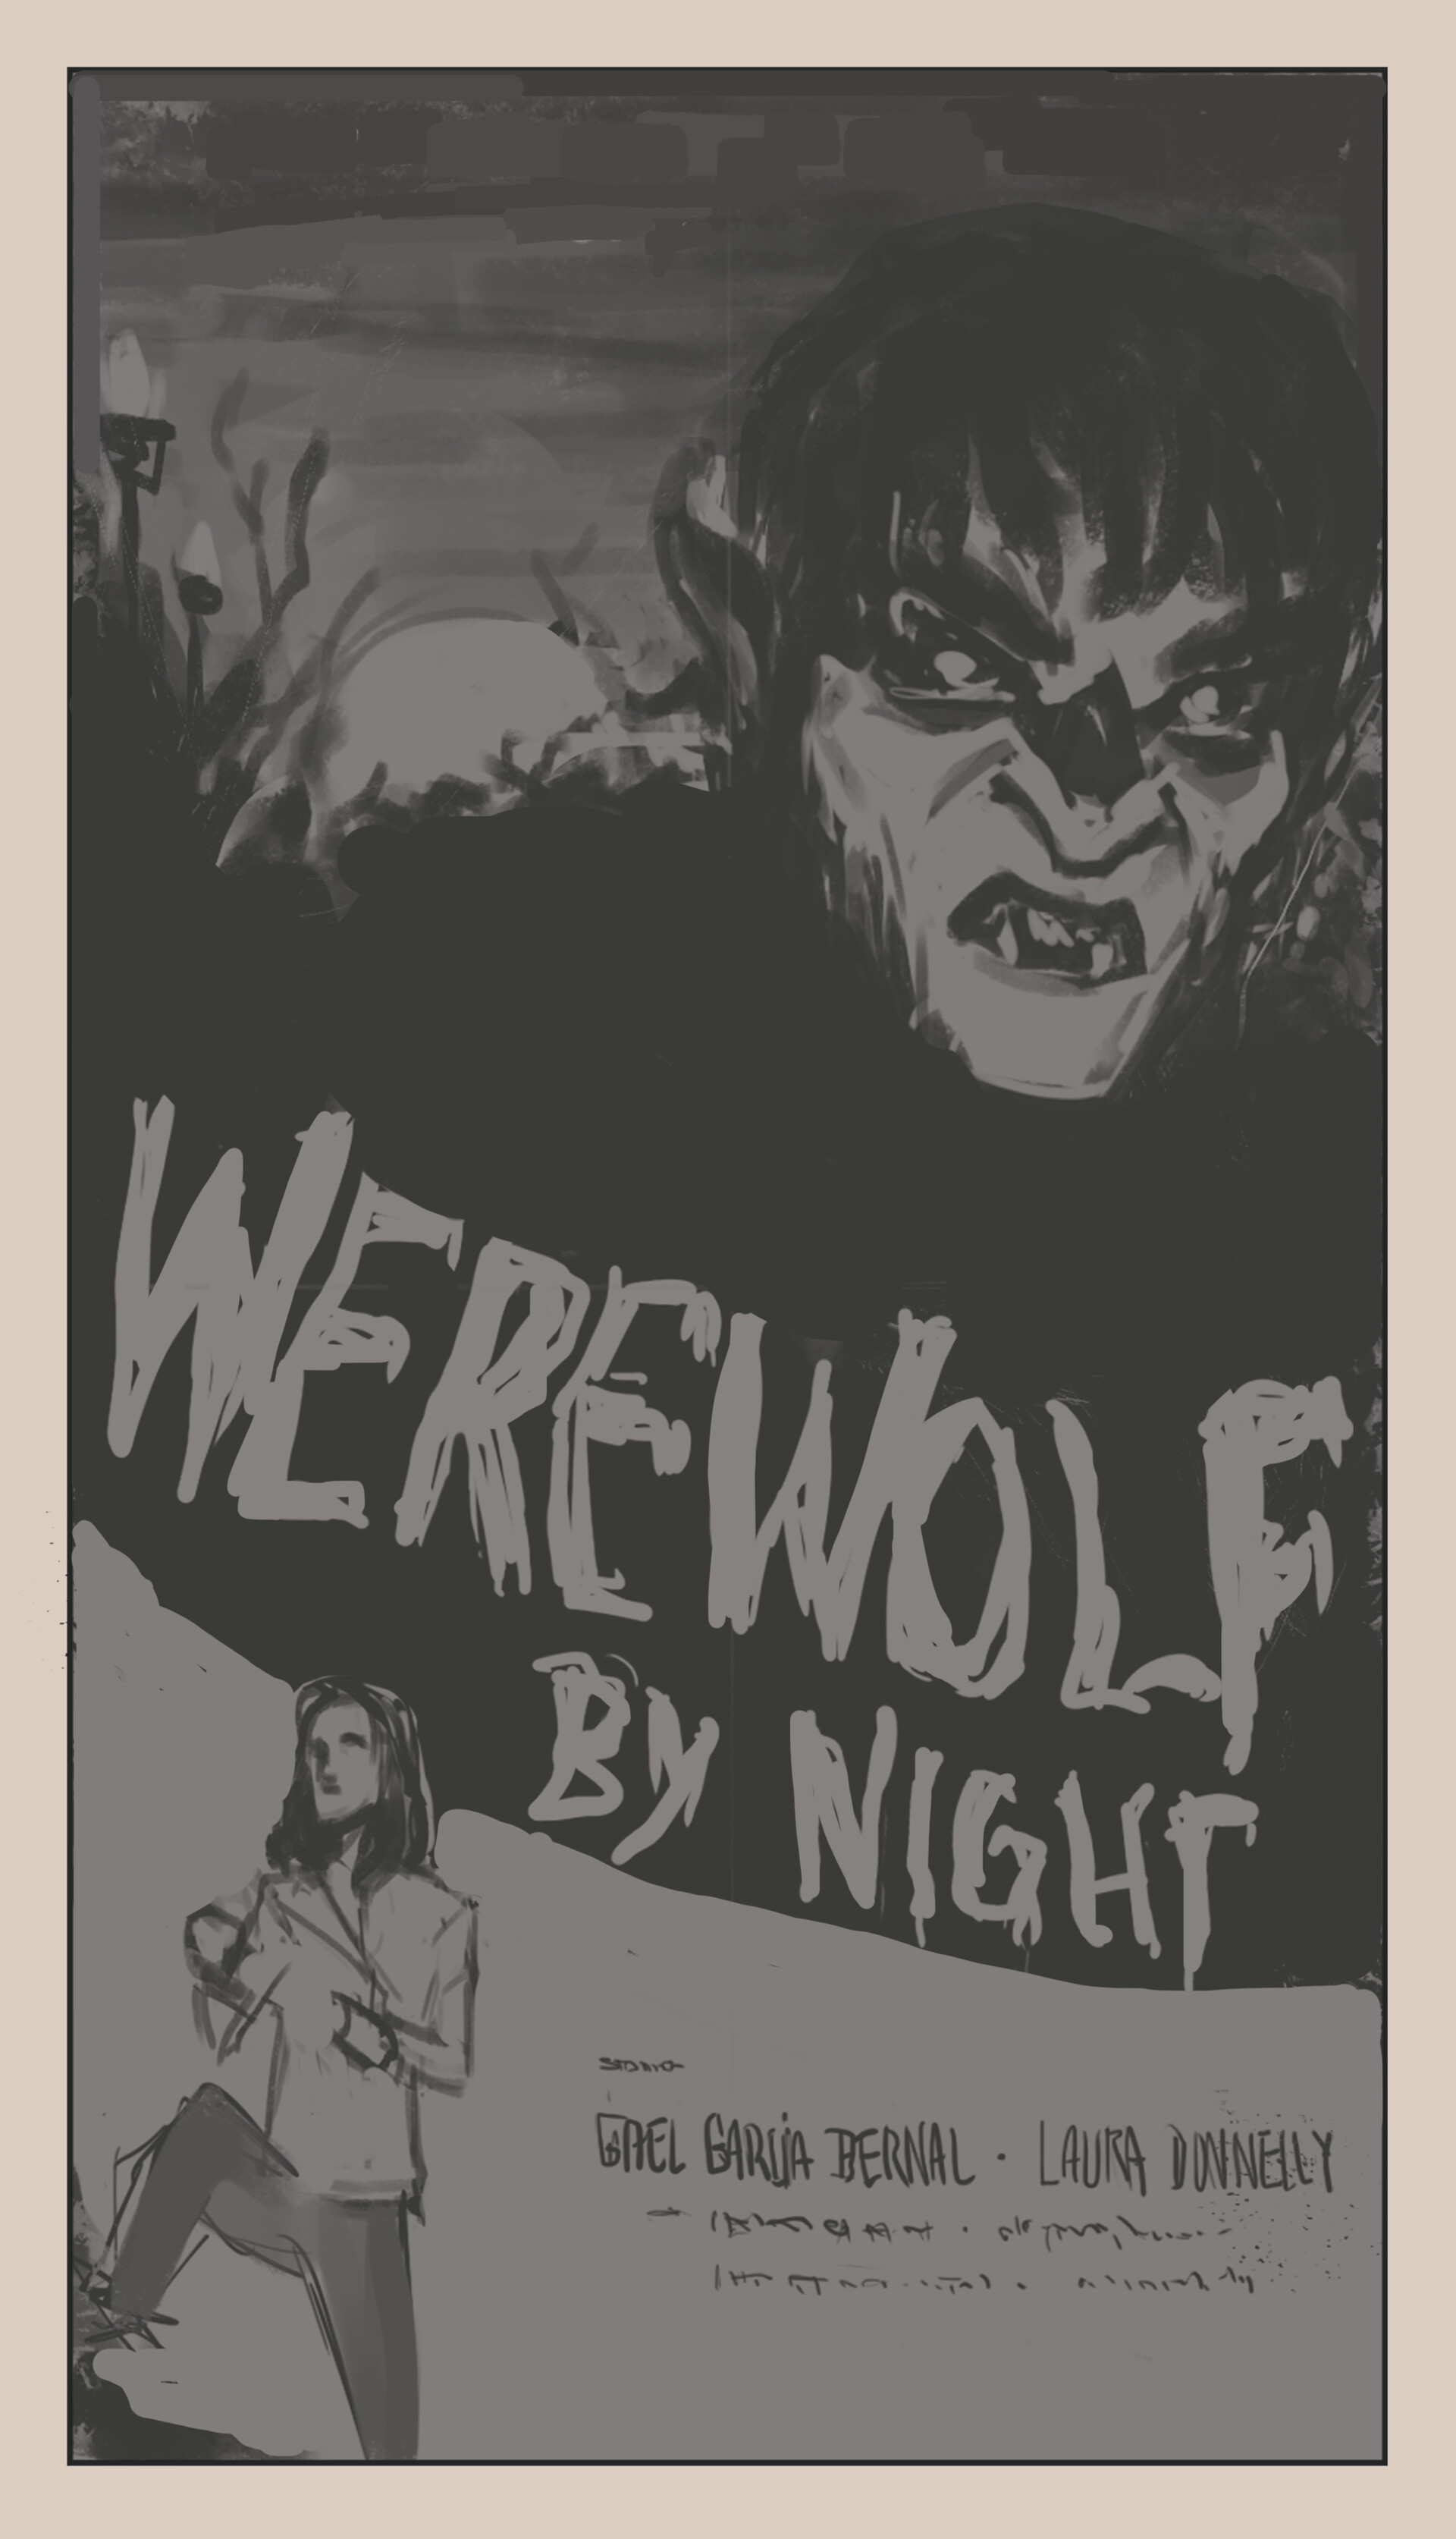 ArtStation - Werewolf by Night